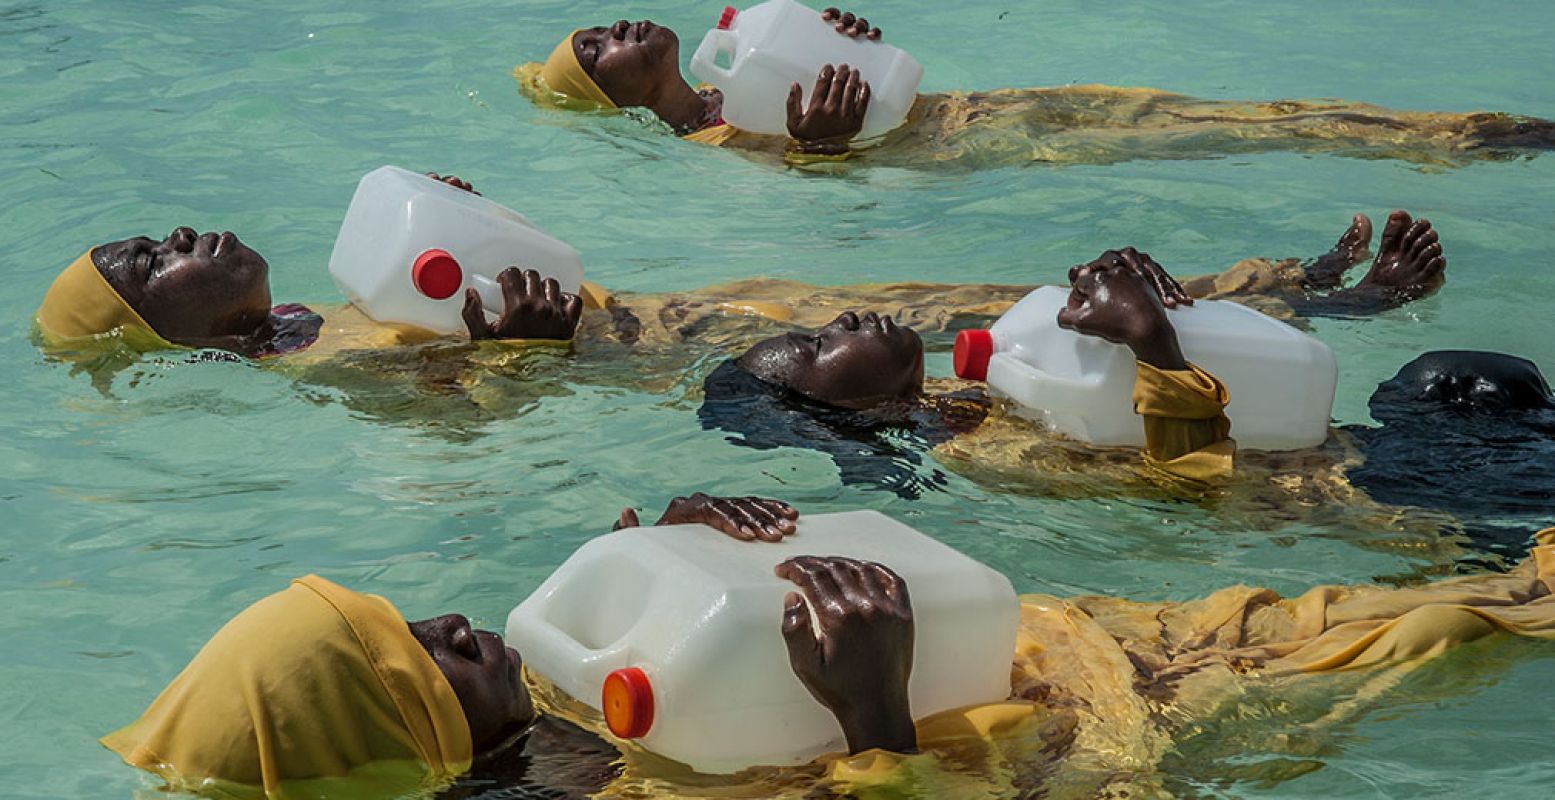 'Finding Freedom in the Water', meisjes van de Kijini Primary School leren zwemmen en anderen uit het water redden in the Indische Oceaan bij Muyuni Beach, Zanzibar. Foto: © Anna Boyiazis